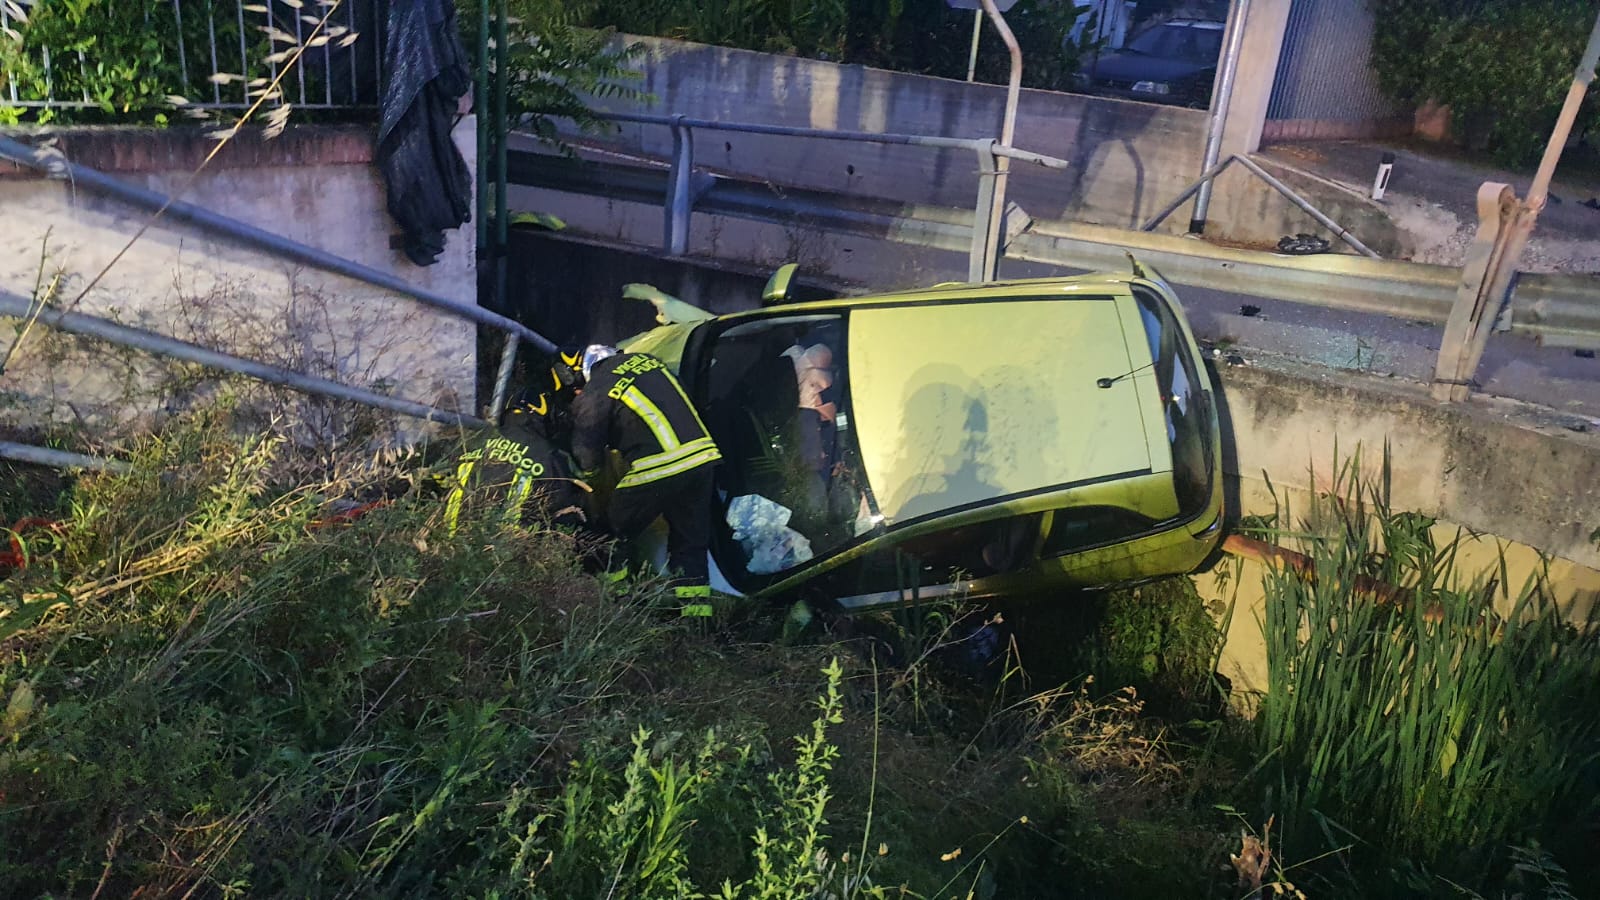 Incidente stradale sulla SS16 a Martinsicuro: nessun ferito grave e rapida messa in sicurezza dell'auto alimentata a GPL